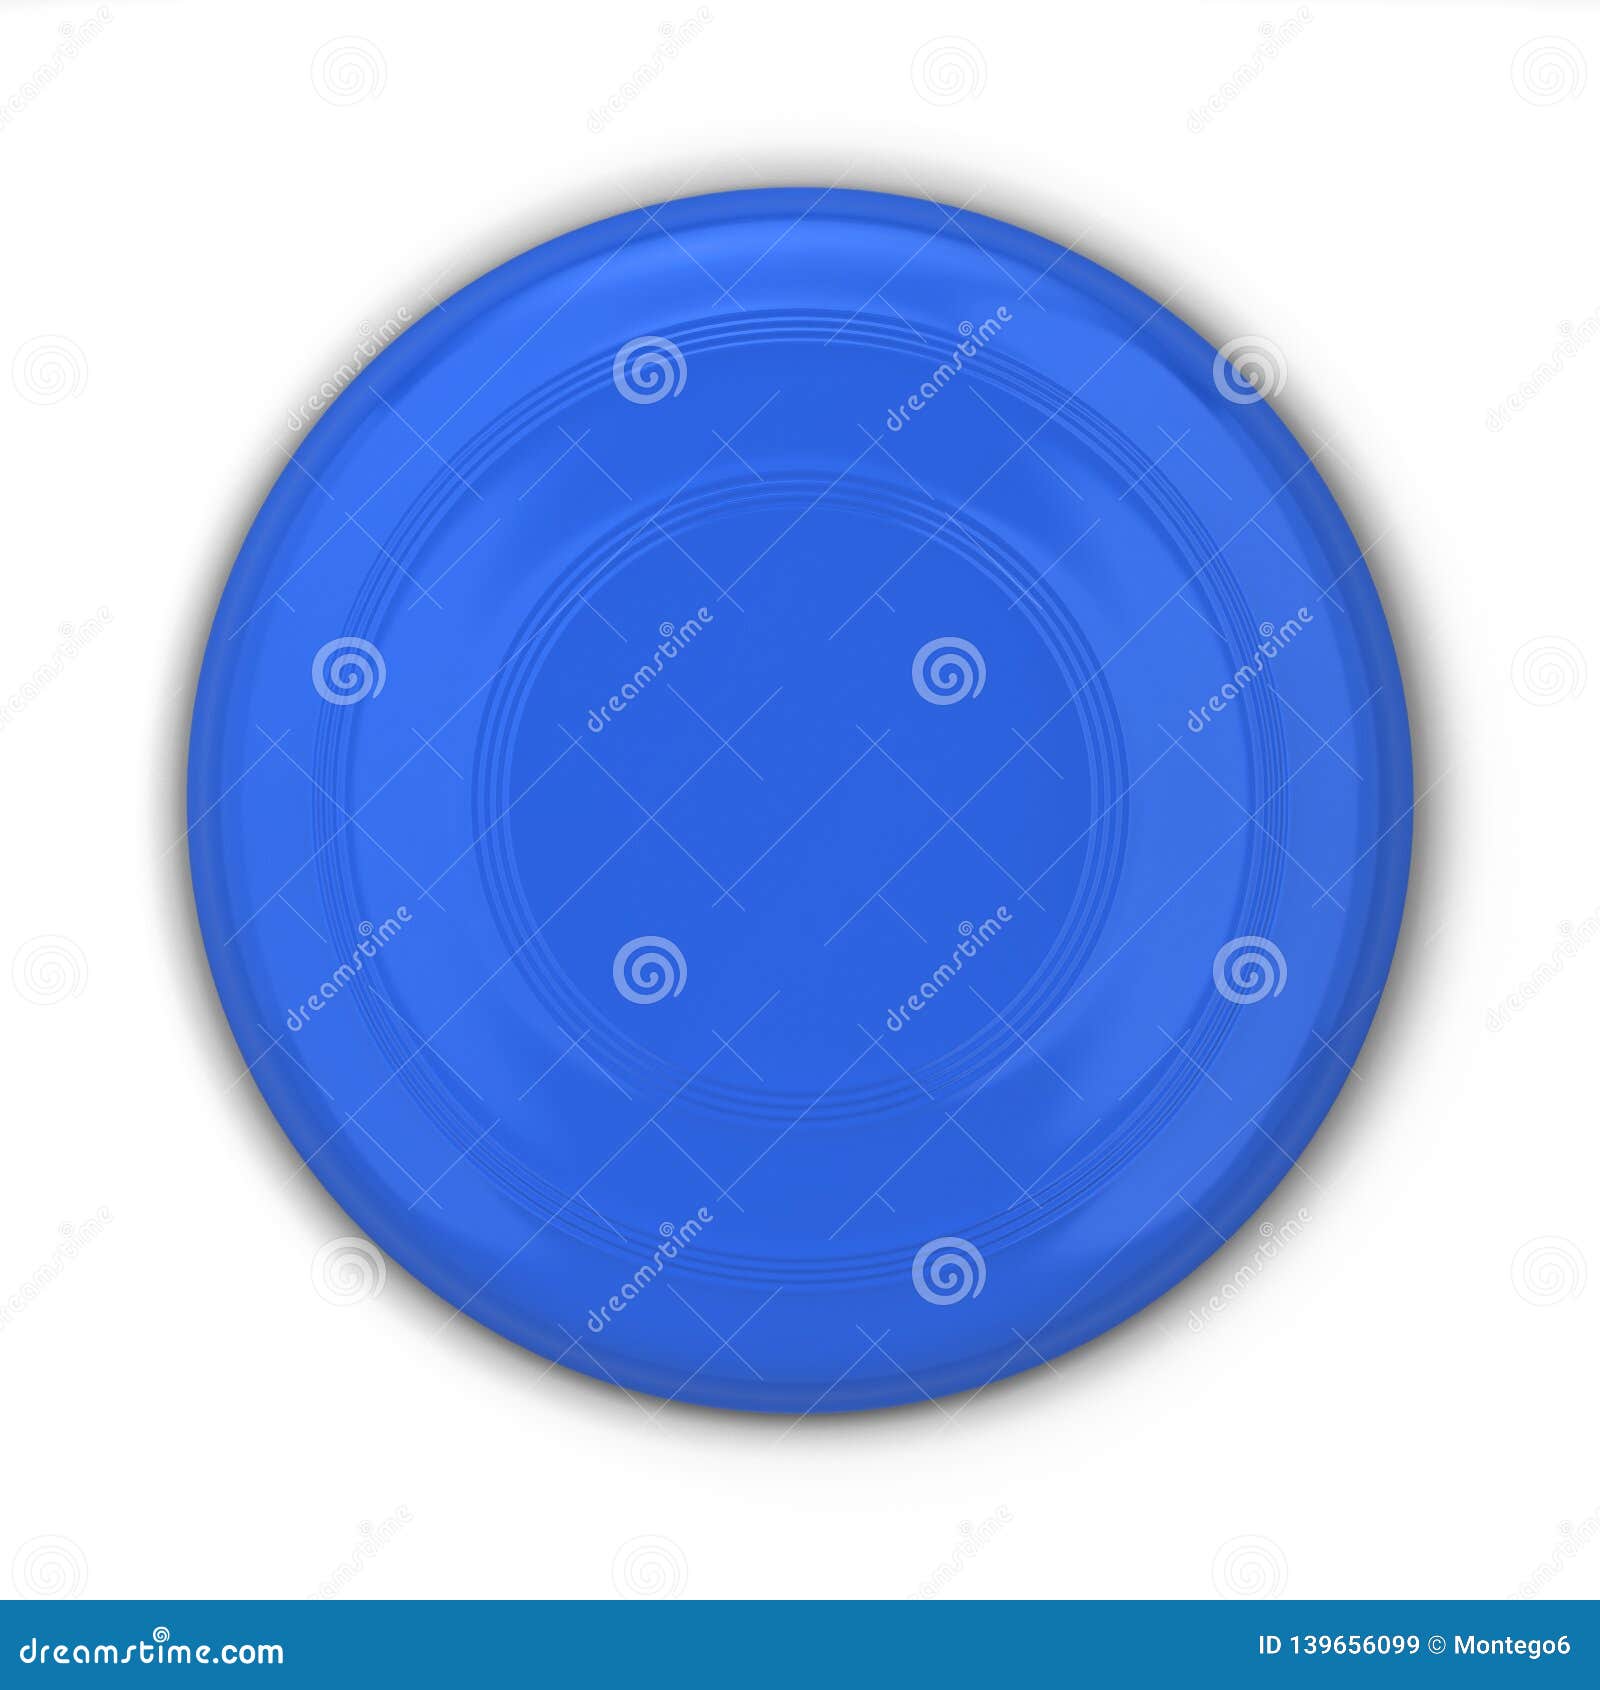 Download Blank frisbee mockup stock illustration. Illustration of blue - 139656099